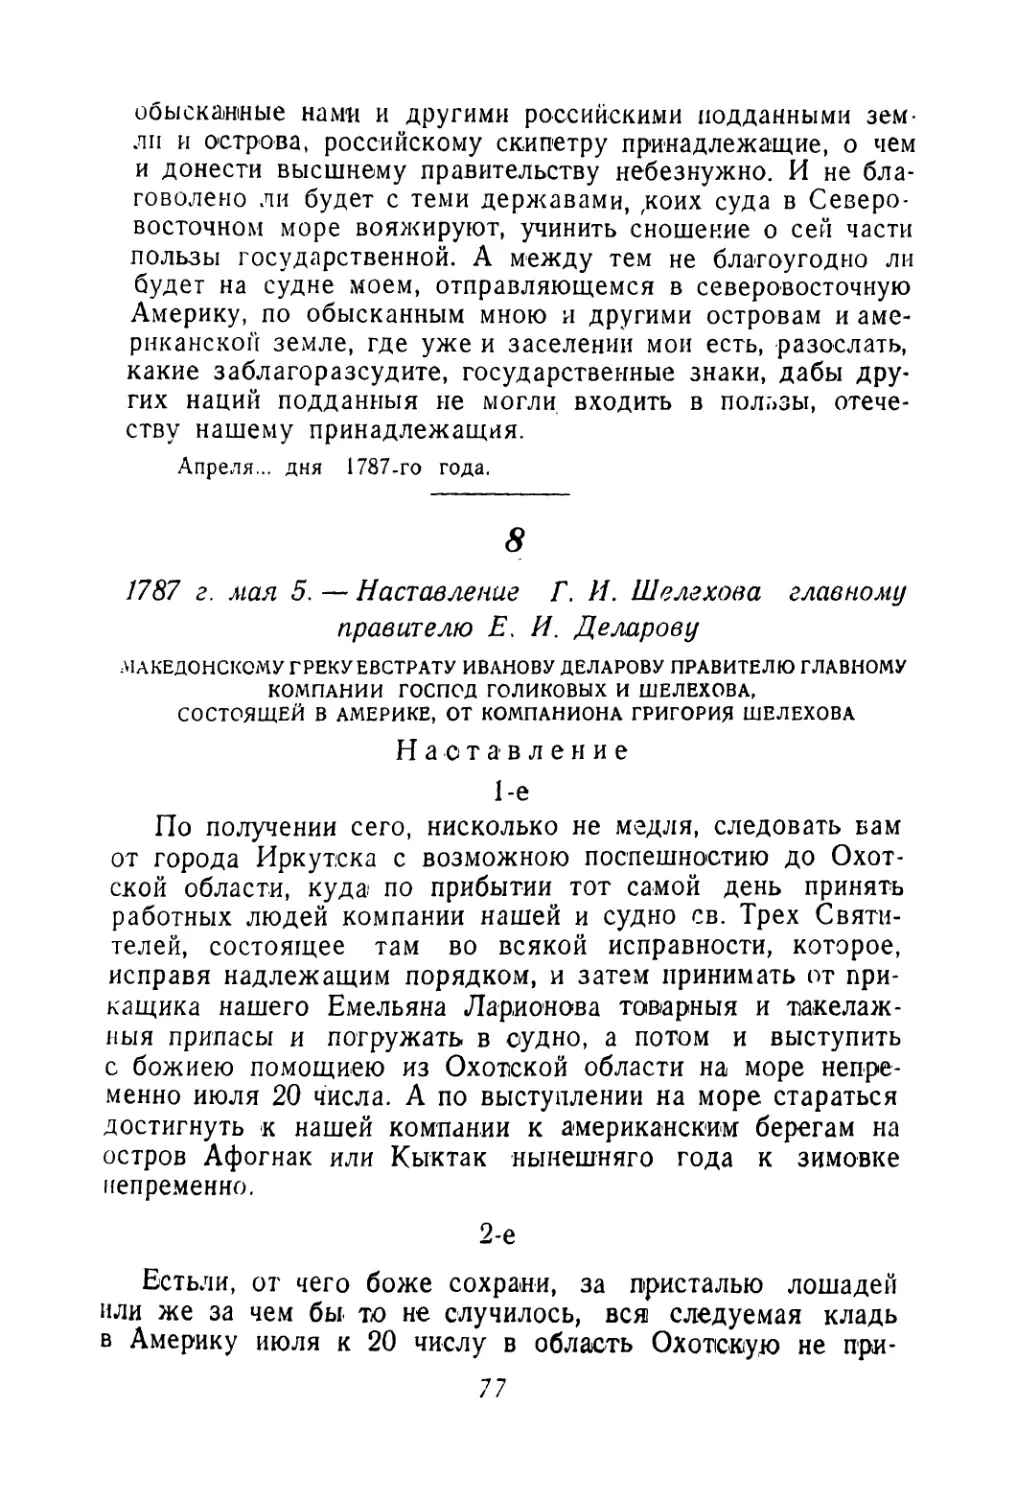 8. 1787 г. мая 5. — Наставление Г. И. Шелехова главному правителю Е. И. Деларову